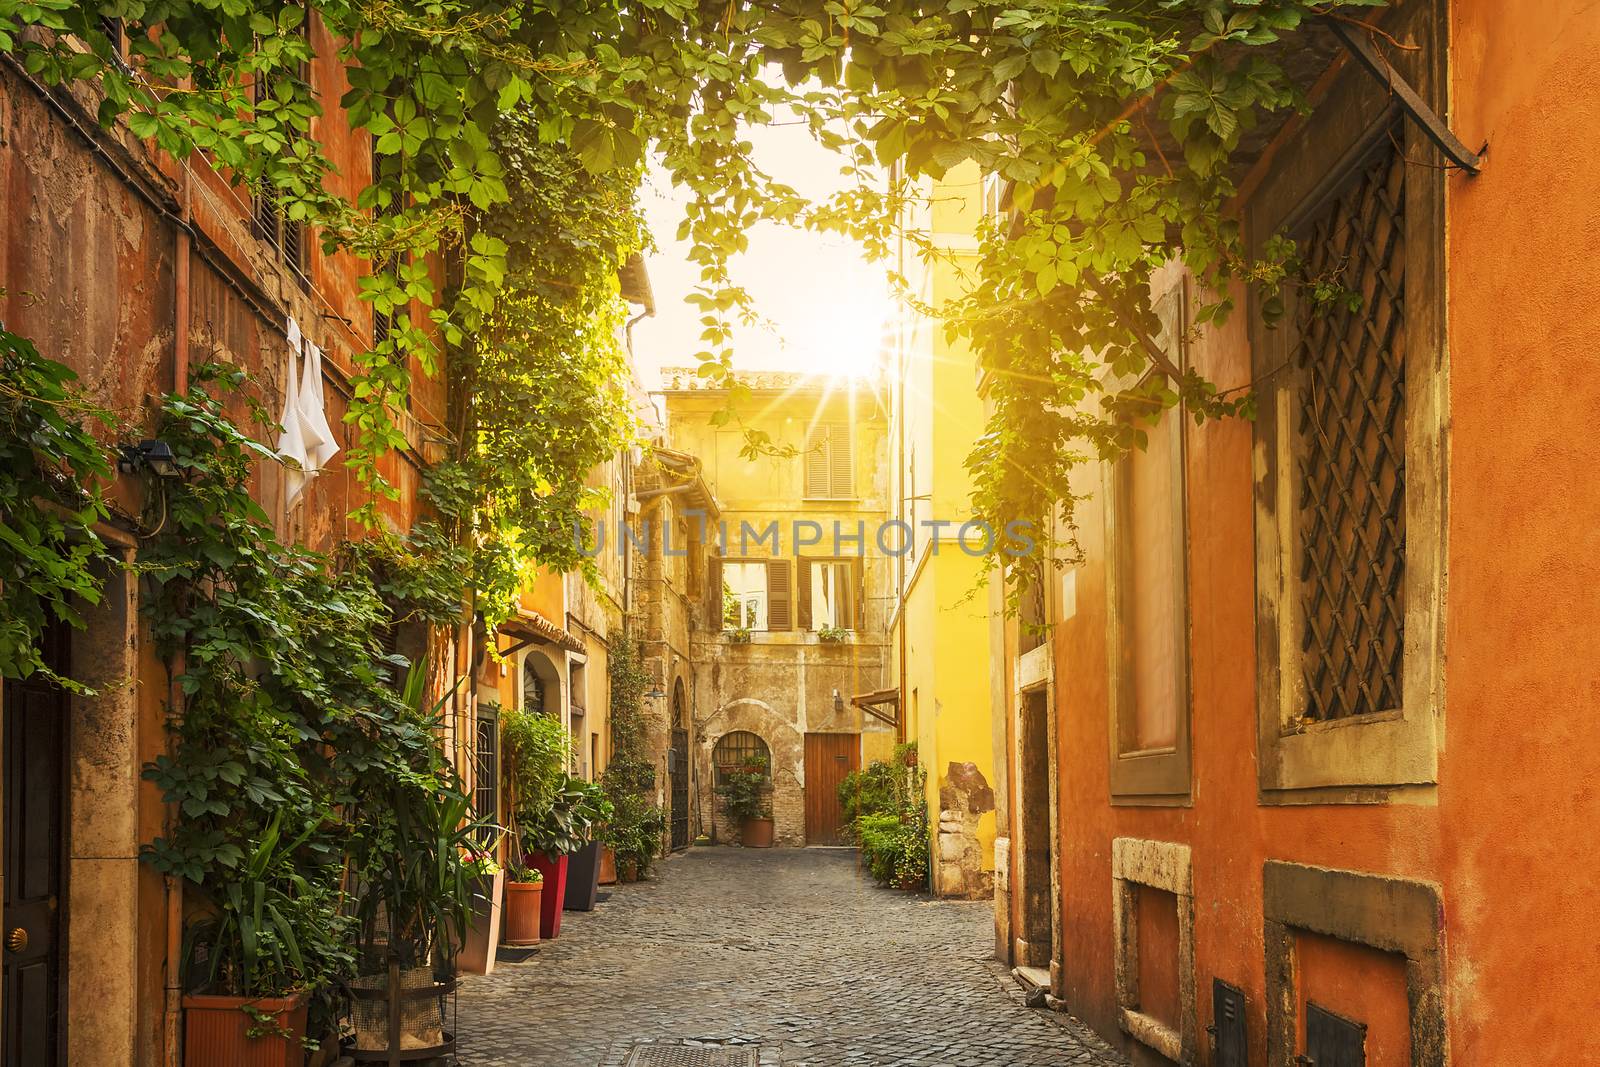 Old street in Trastevere in Rome, Italy